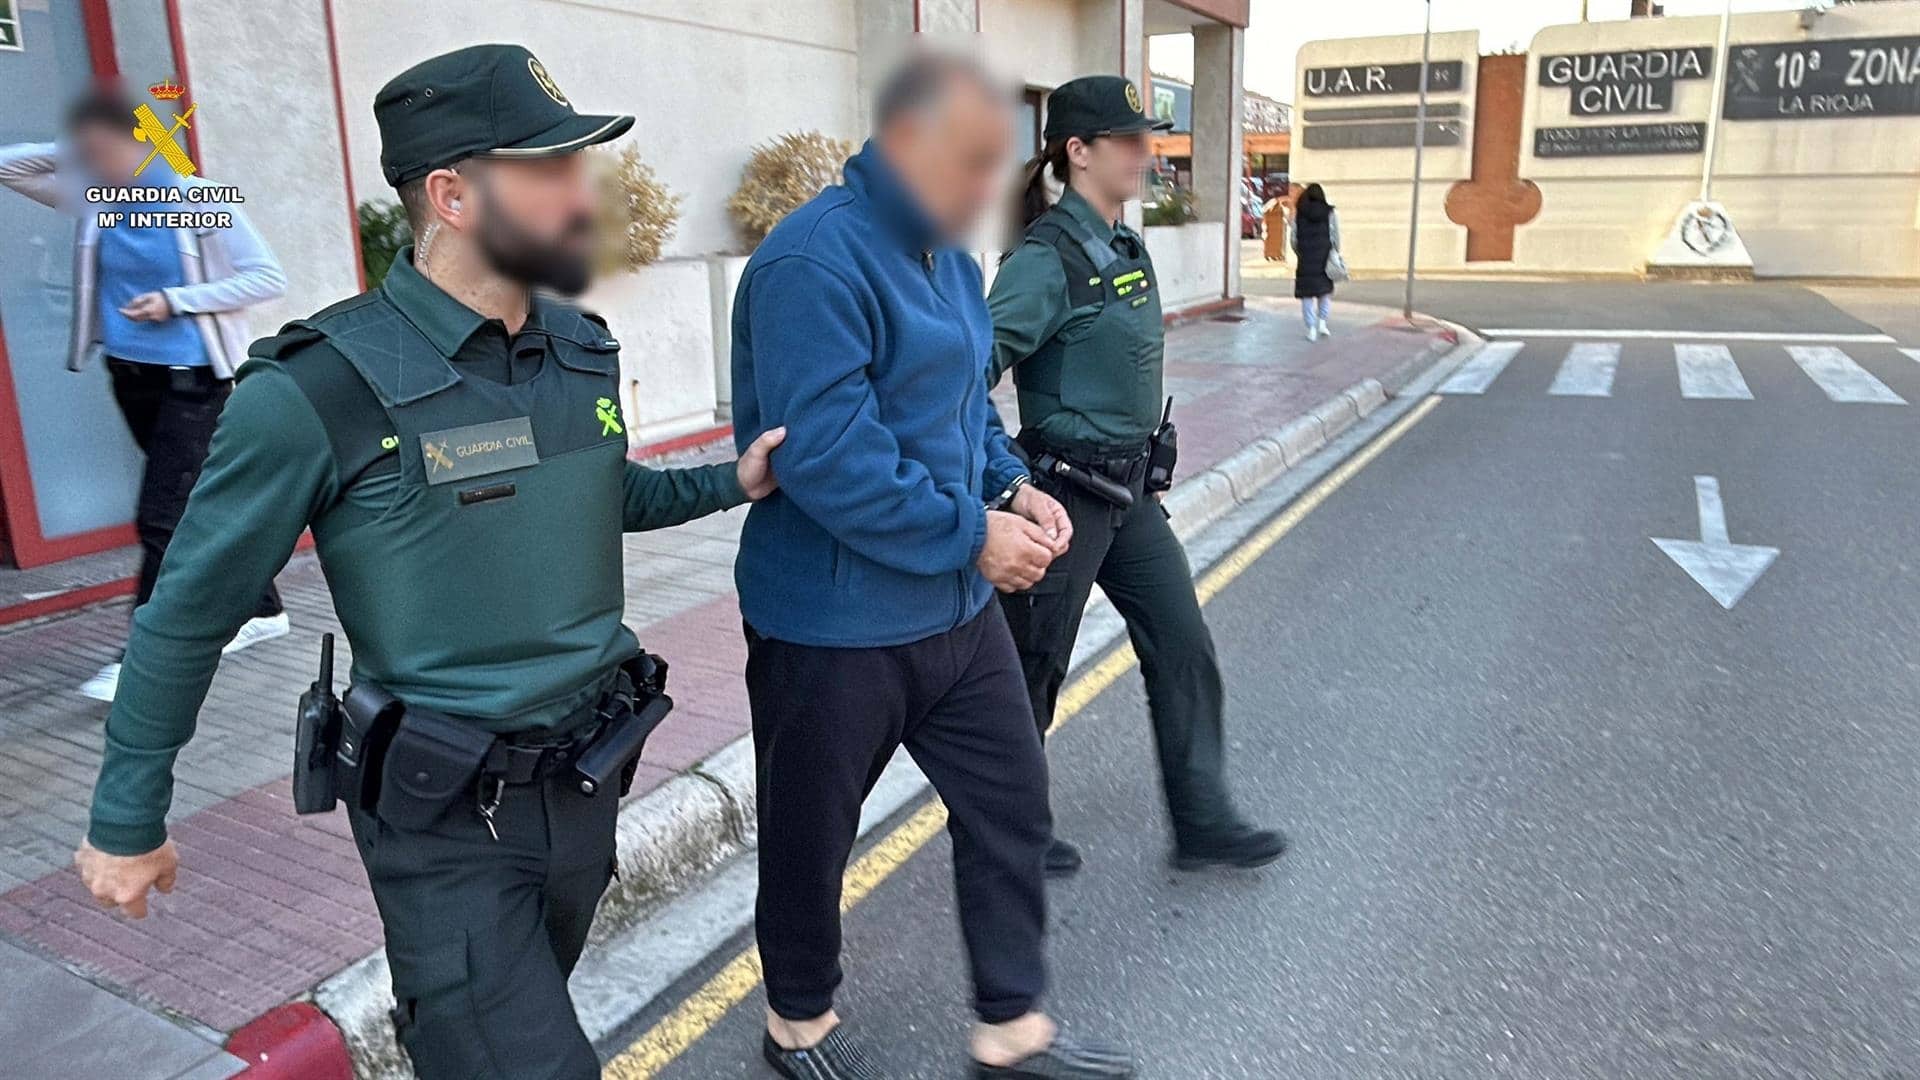 La detención del hombre acusado de agredir sexualmente y retener ilegaLmente a una peregrina en Nájera, en La Rioja | GUARDIA CIVIL